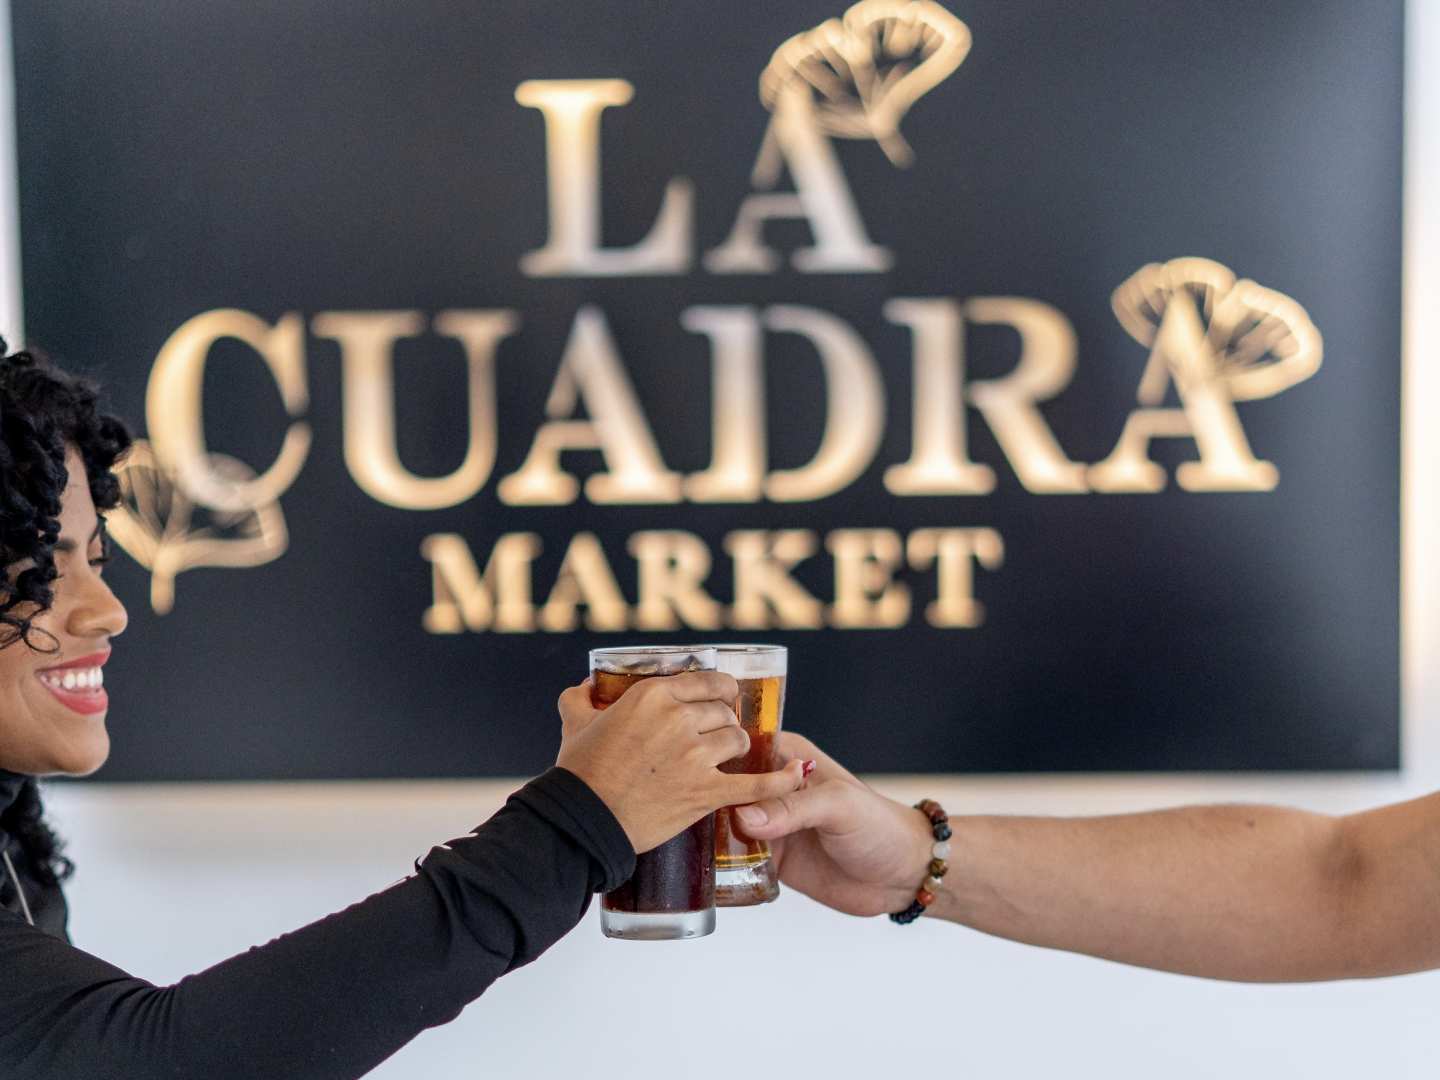 La Cuadra Market